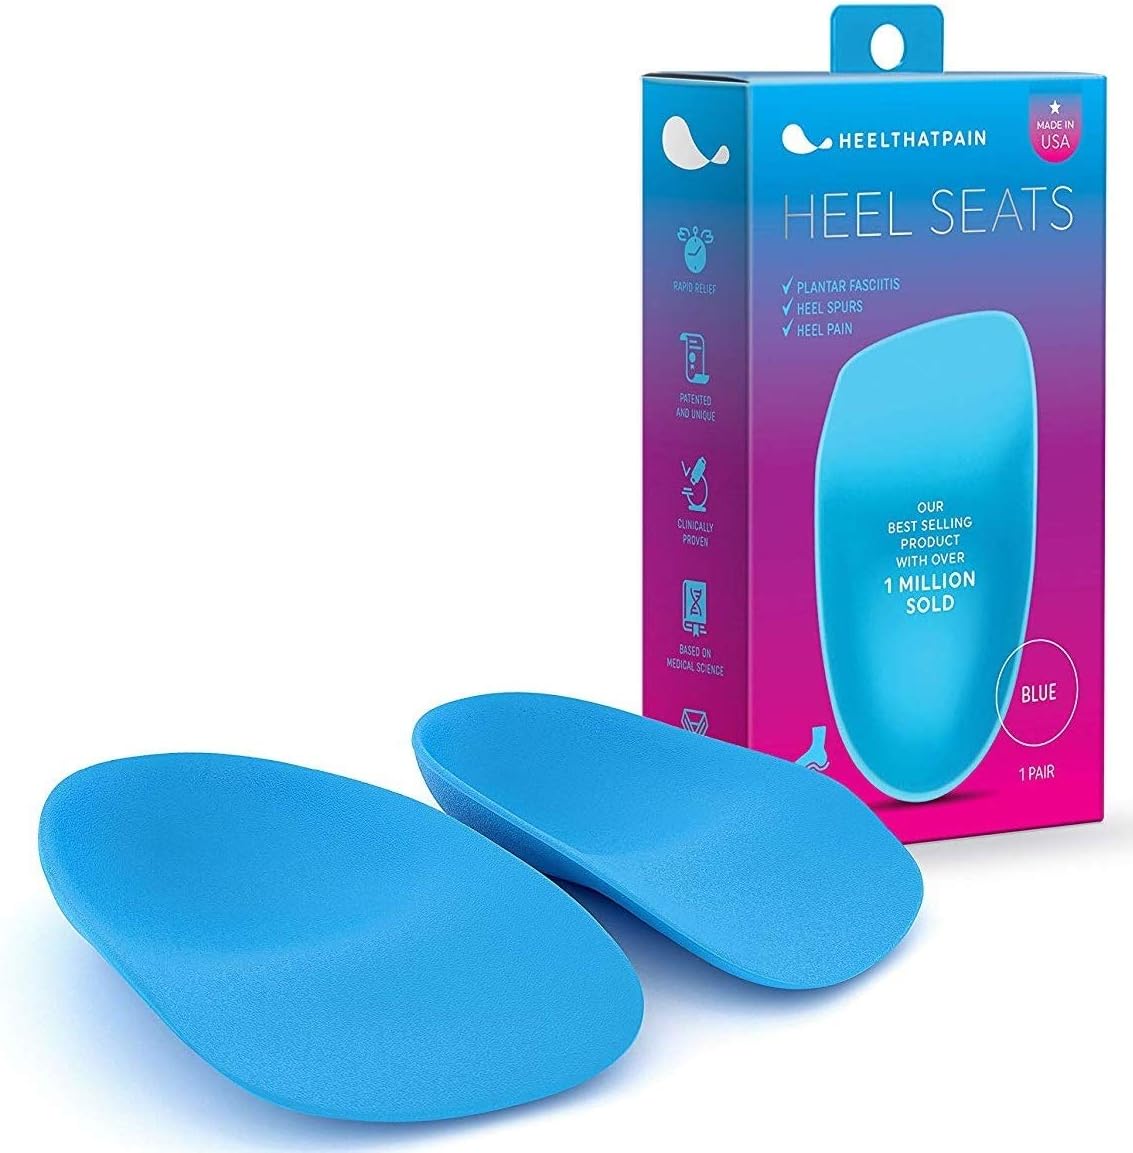 Heel That Pain Plantar Fasciitis Insoles | Heel Seats [...]